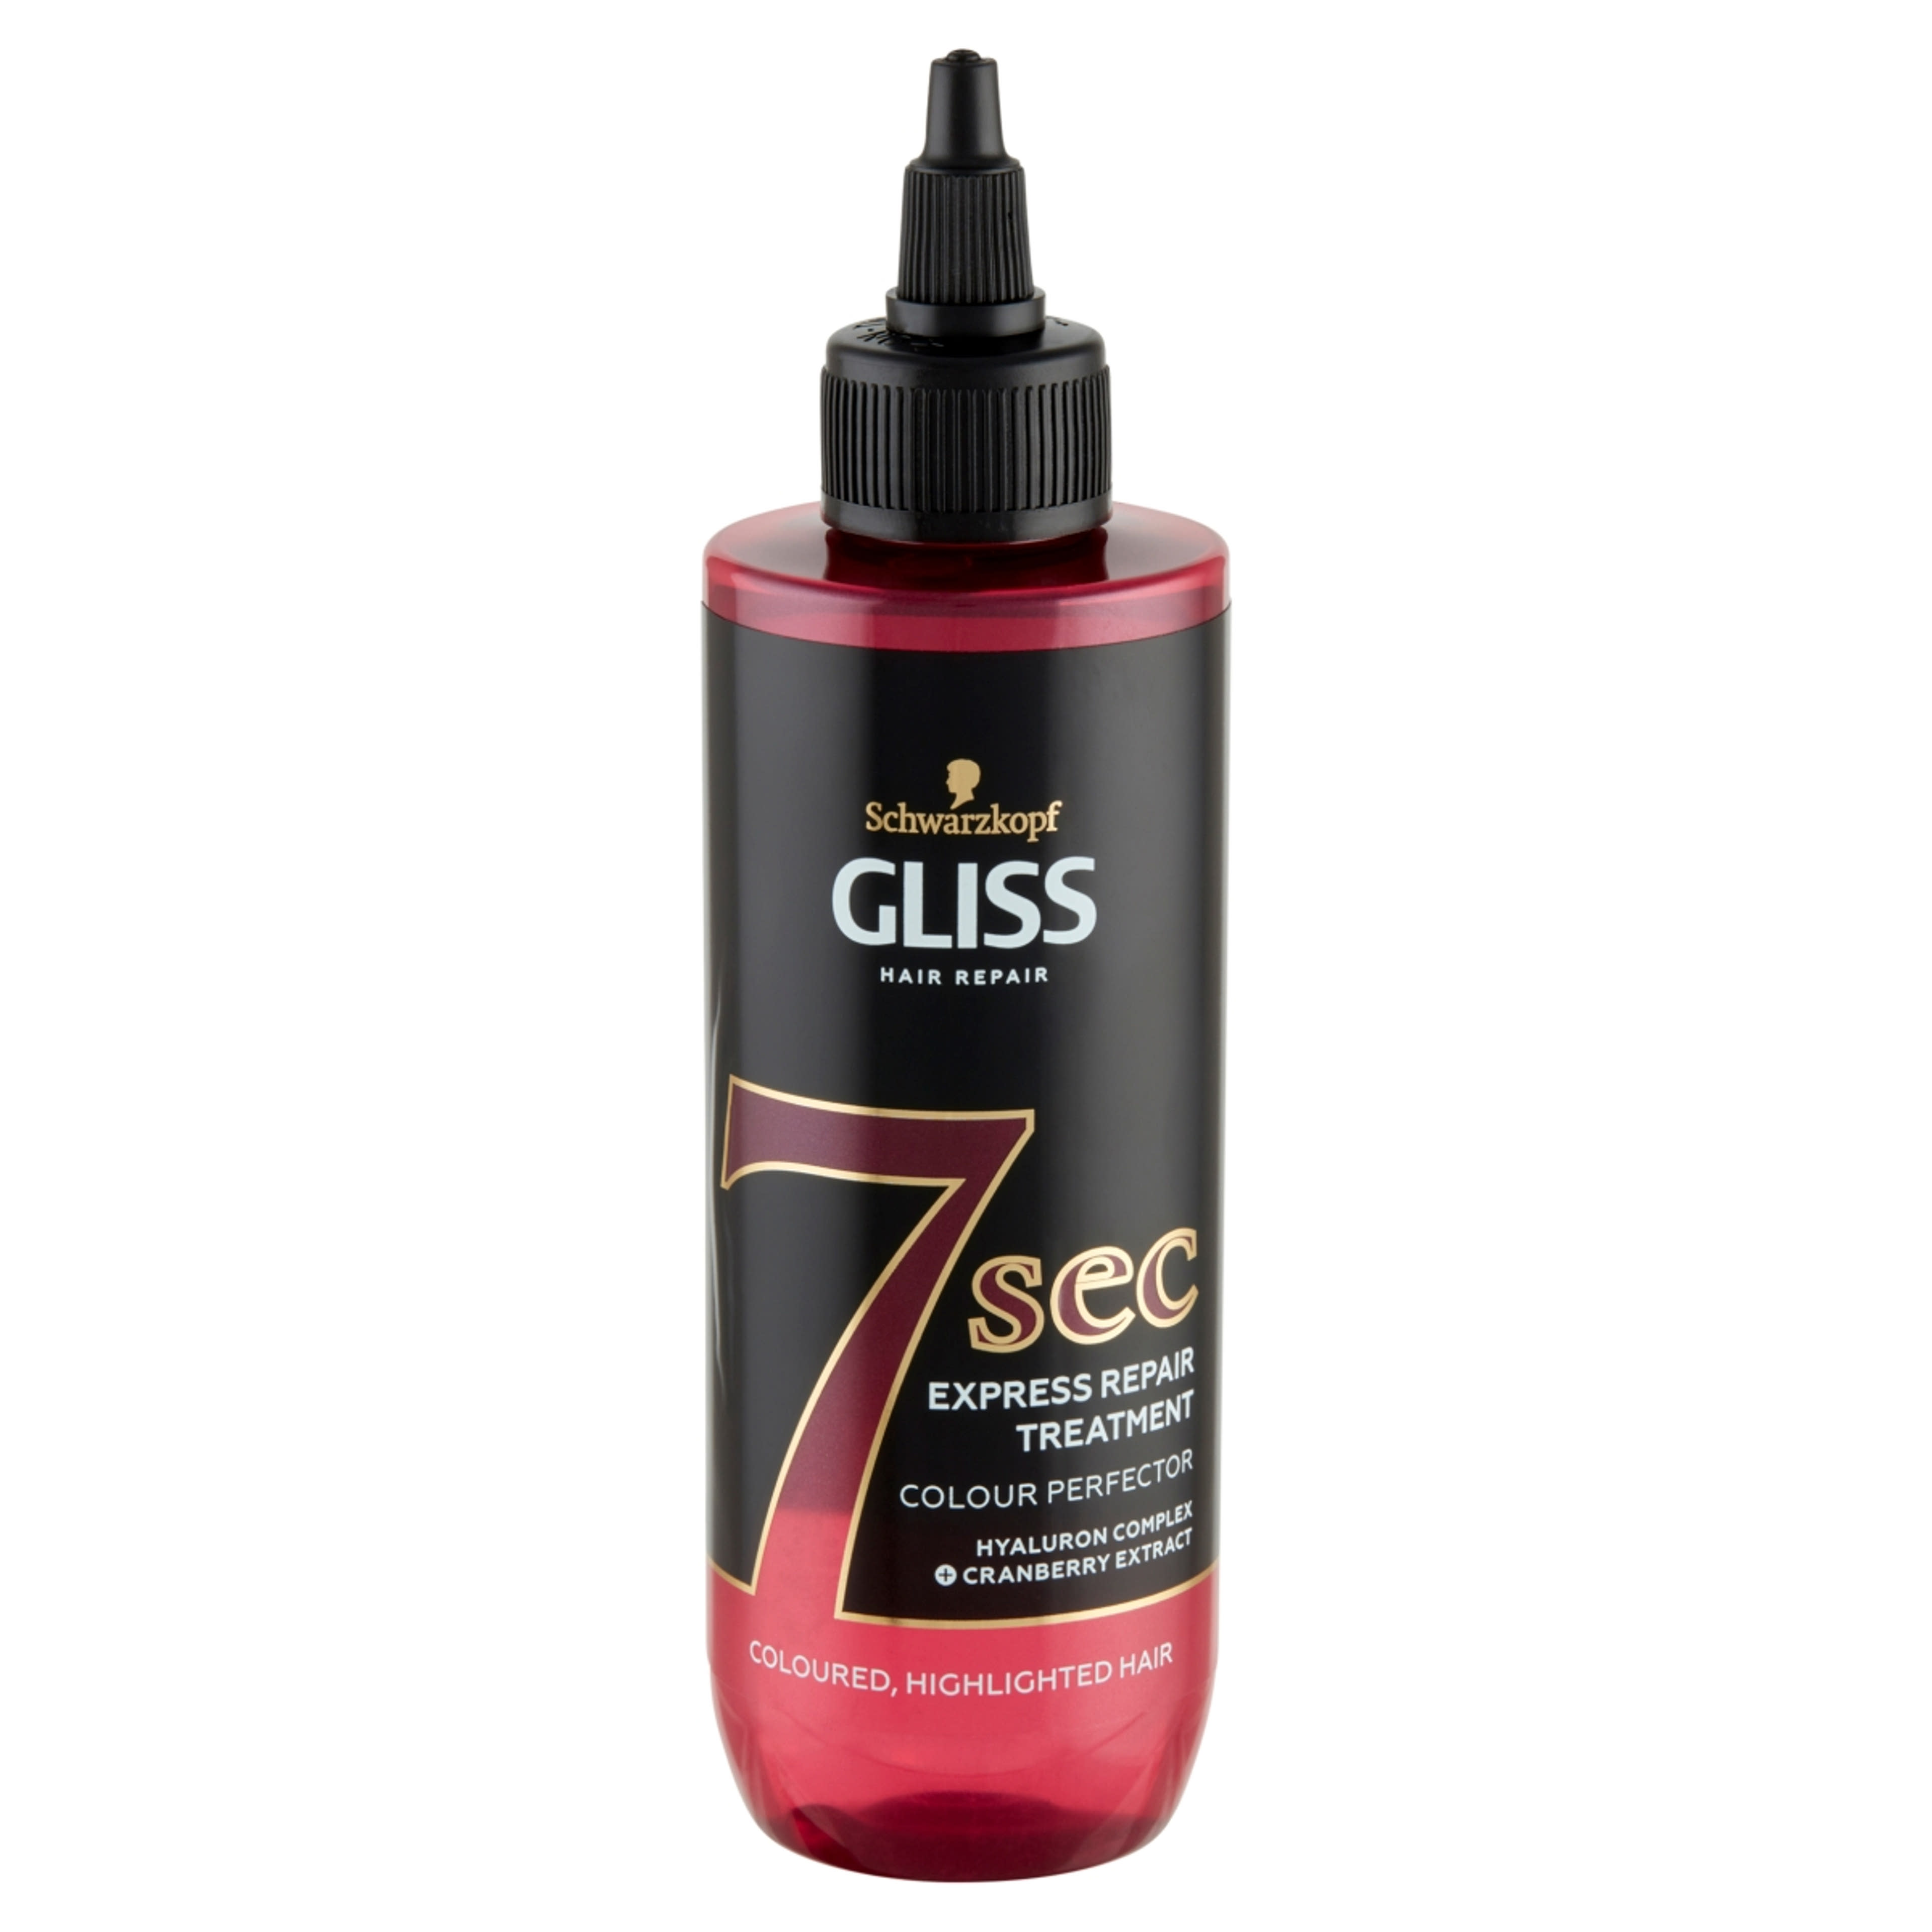 Gliss Express Repair hajpakolás 7sec ragyogó szín - 200 ml-2